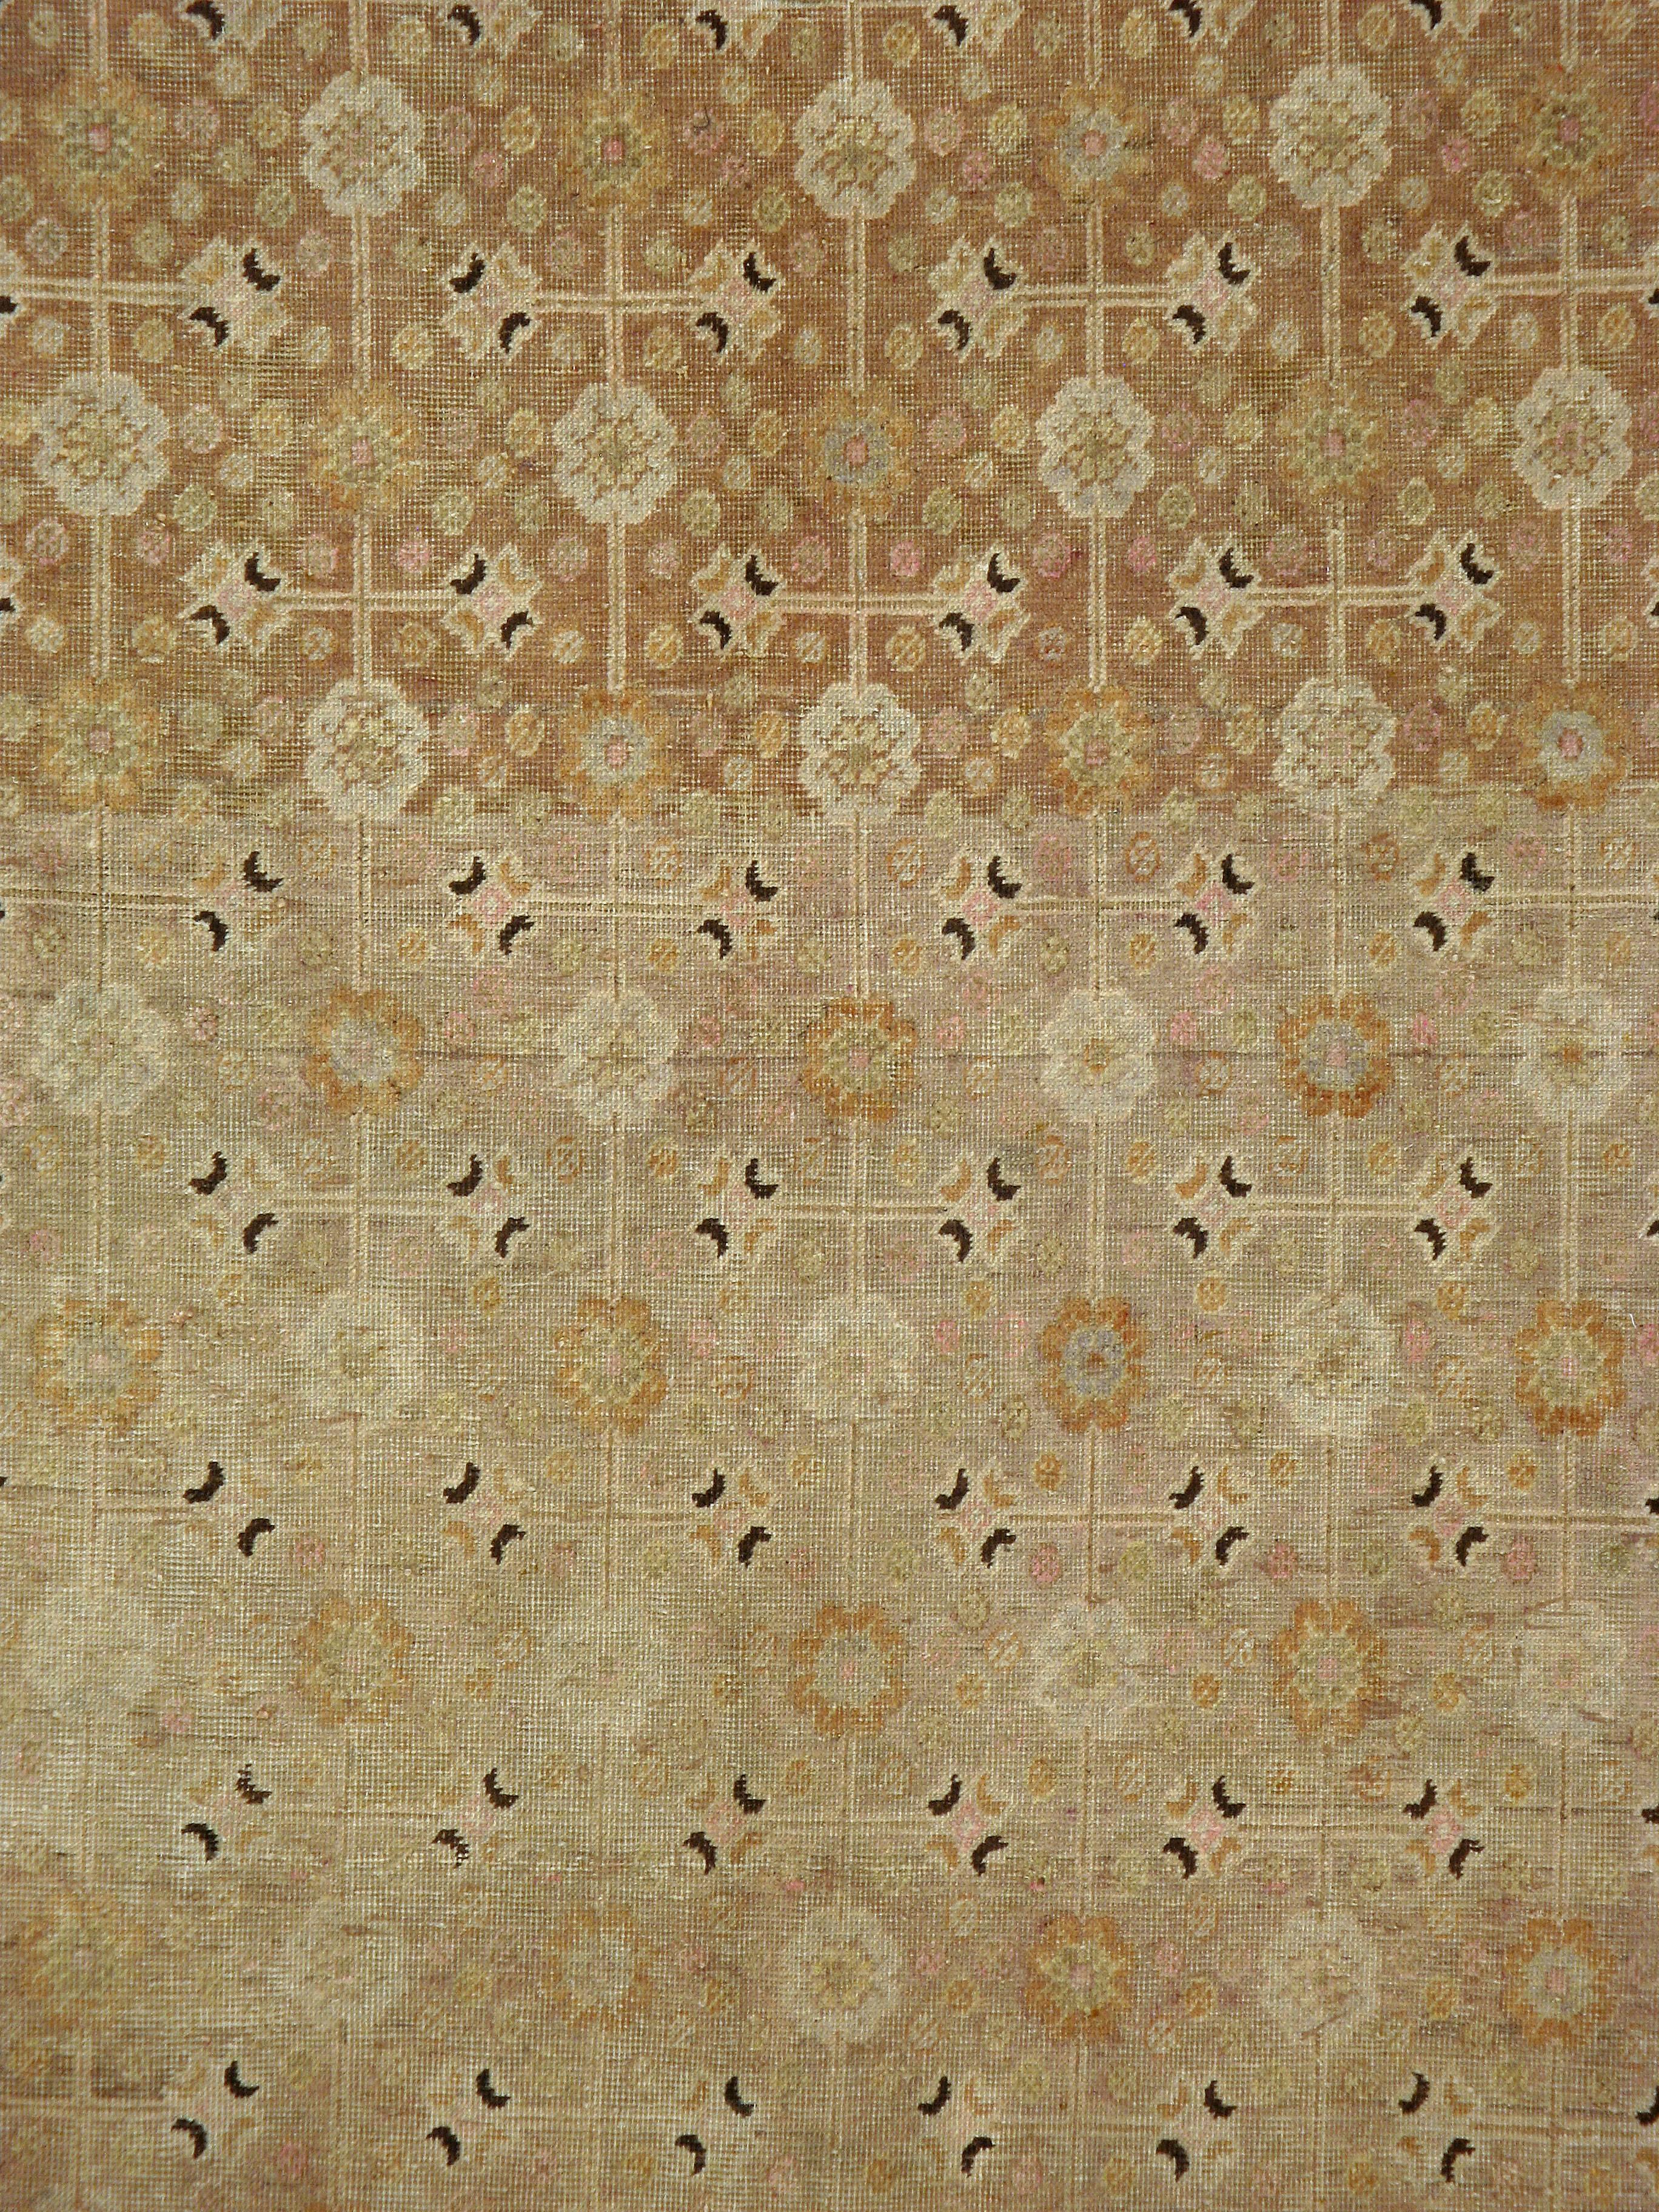 turkestan rugs